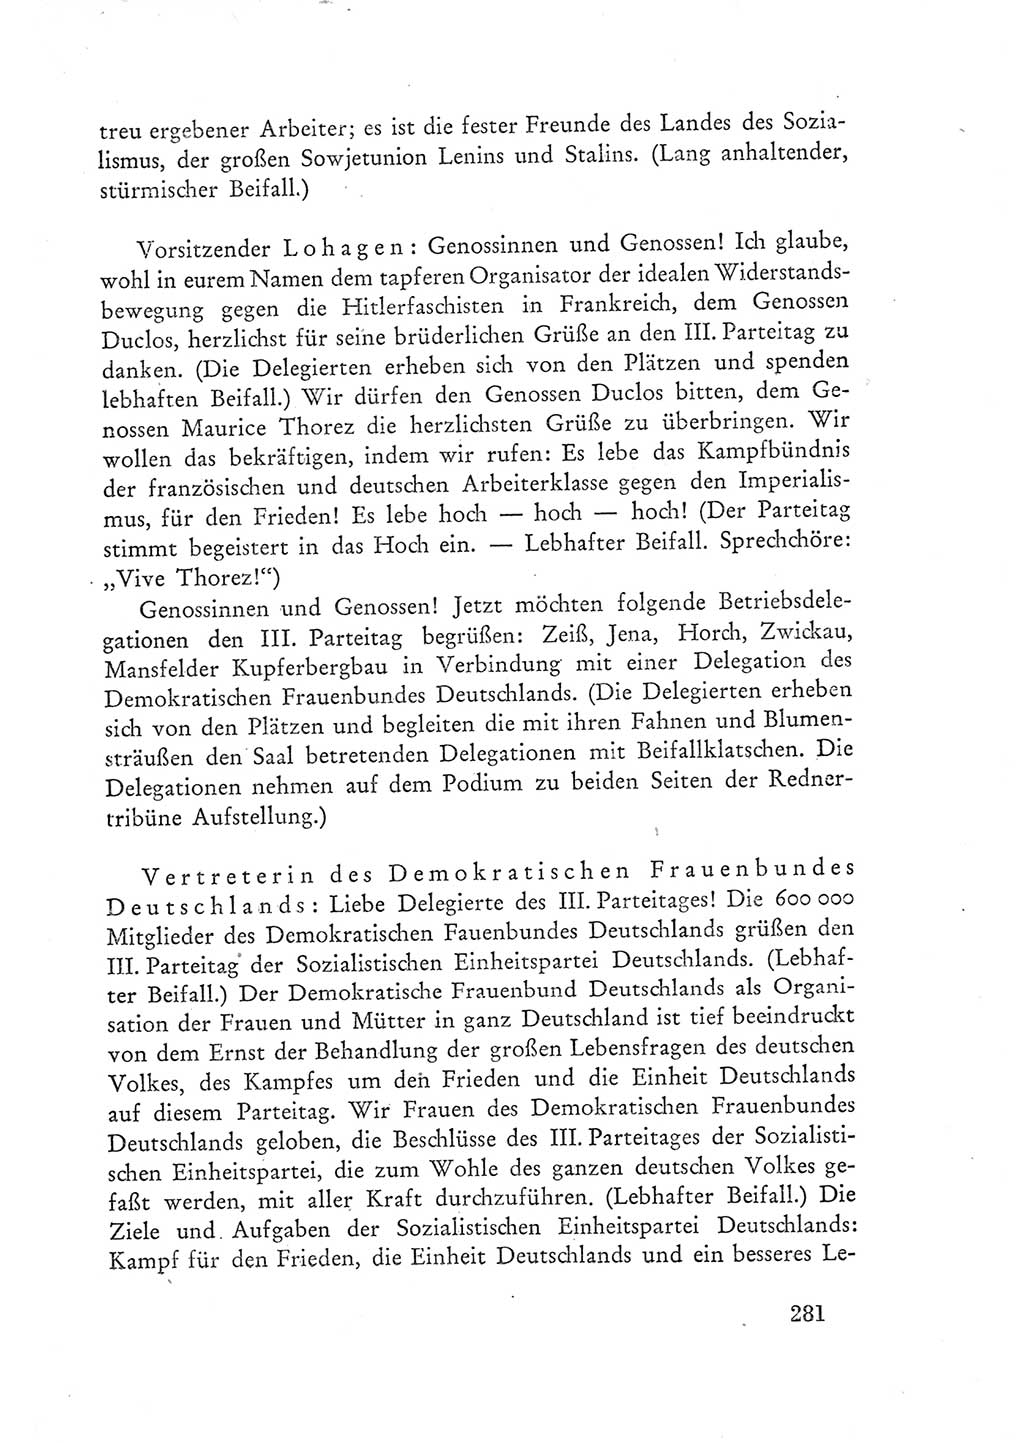 Protokoll der Verhandlungen des Ⅲ. Parteitages der Sozialistischen Einheitspartei Deutschlands (SED) [Deutsche Demokratische Republik (DDR)] 1950, Band 1, Seite 281 (Prot. Verh. Ⅲ. PT SED DDR 1950, Bd. 1, S. 281)